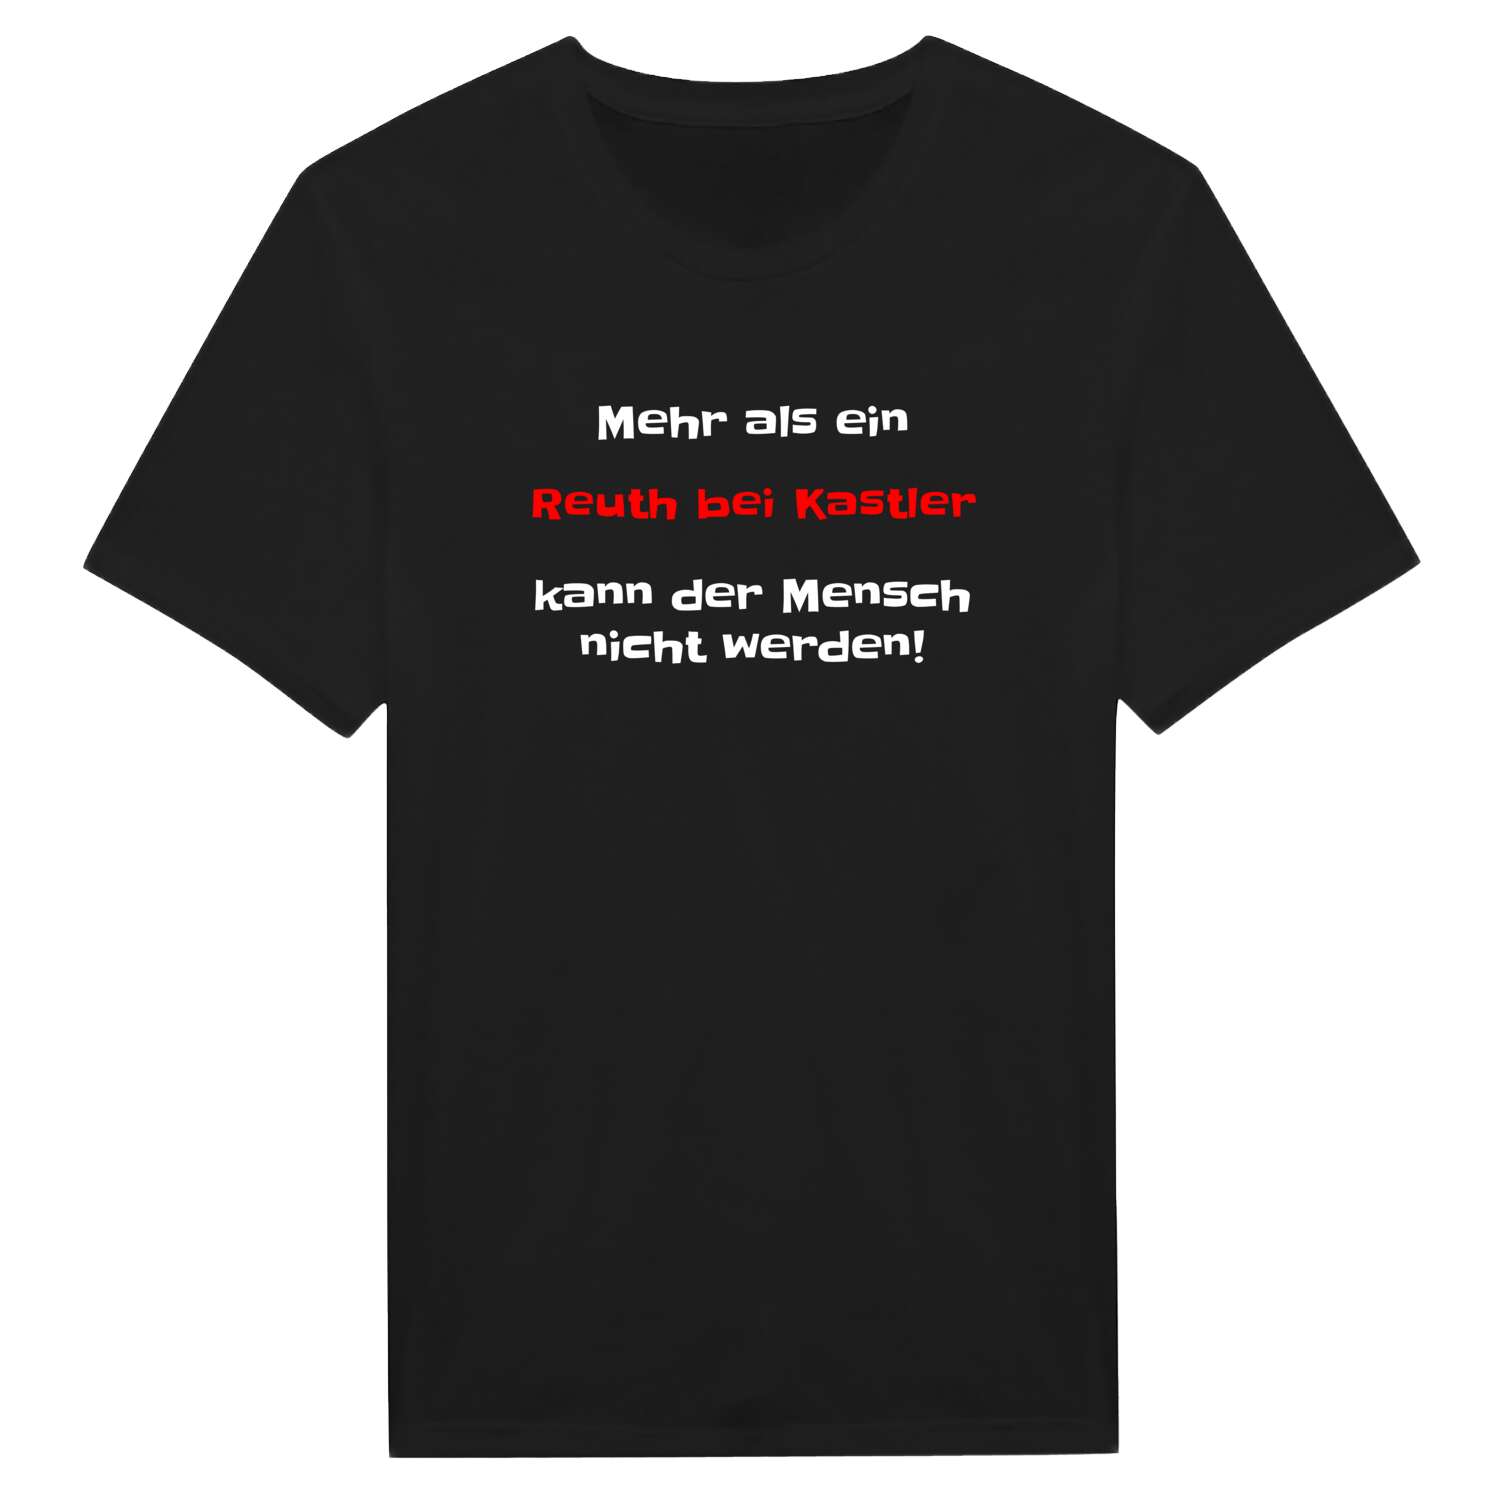 Reuth bei Kastl T-Shirt »Mehr als ein«